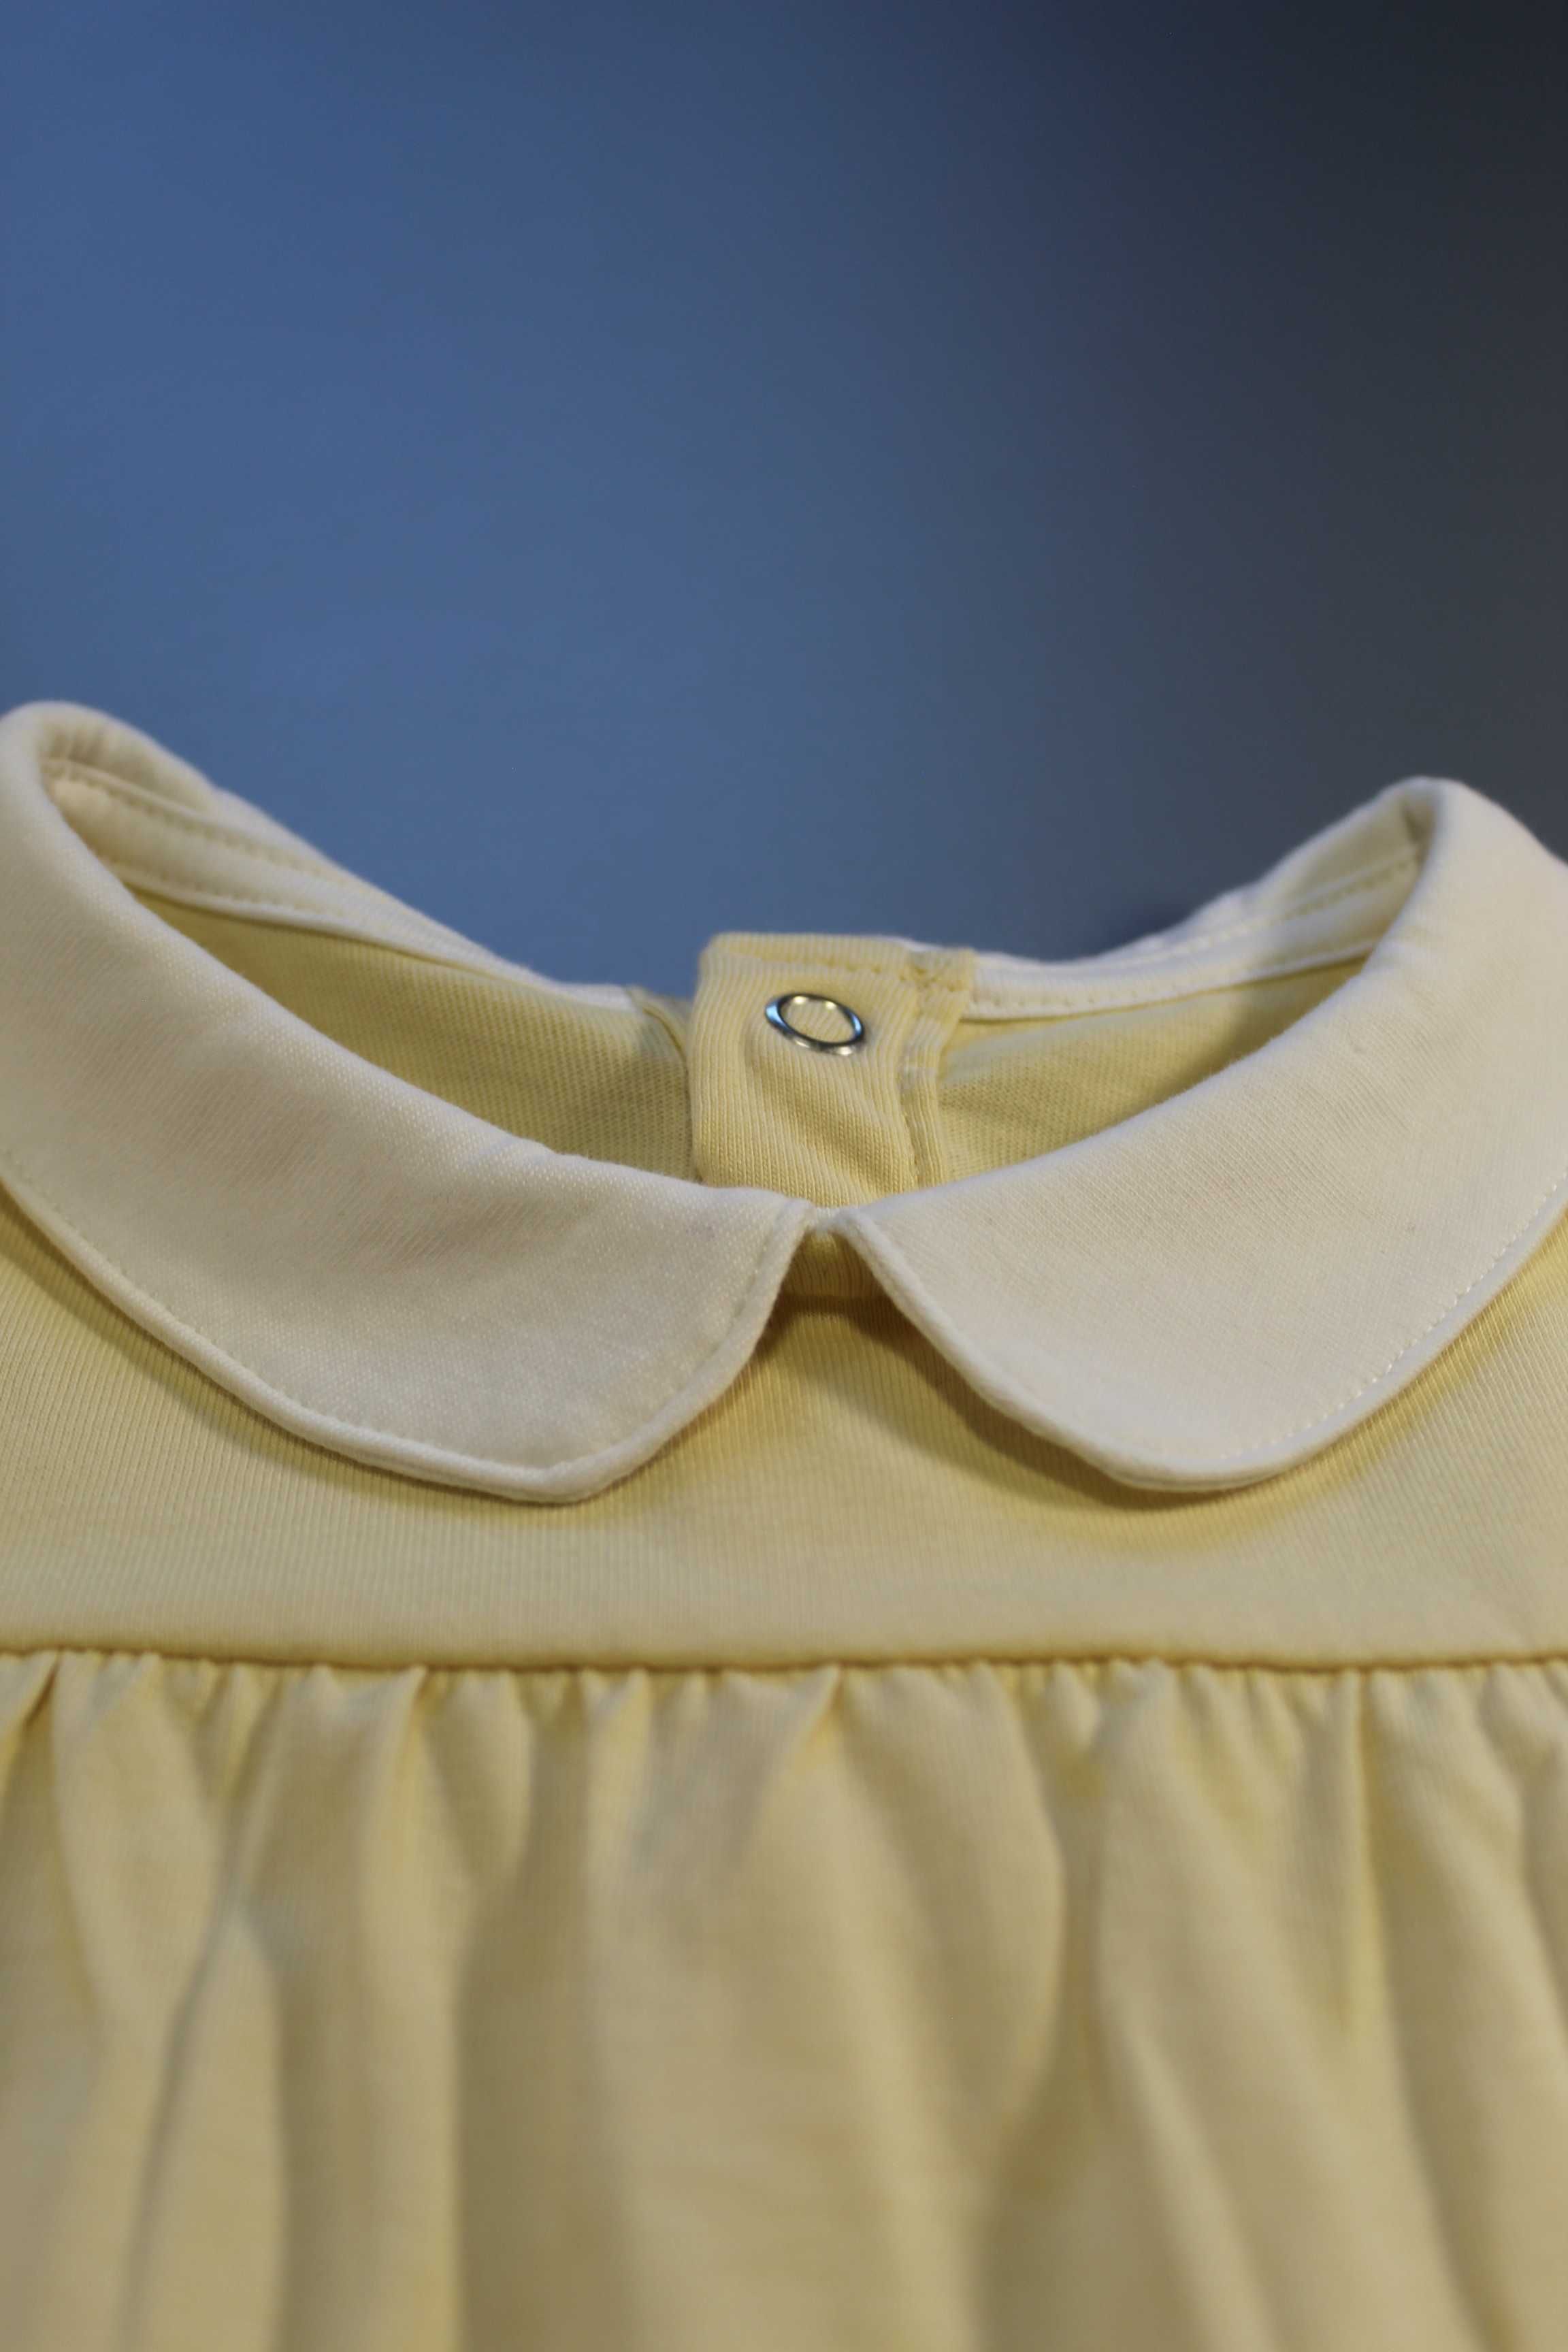 Жовта туніка футболка з білим комірцем TU, для віку 1-2 року, акція